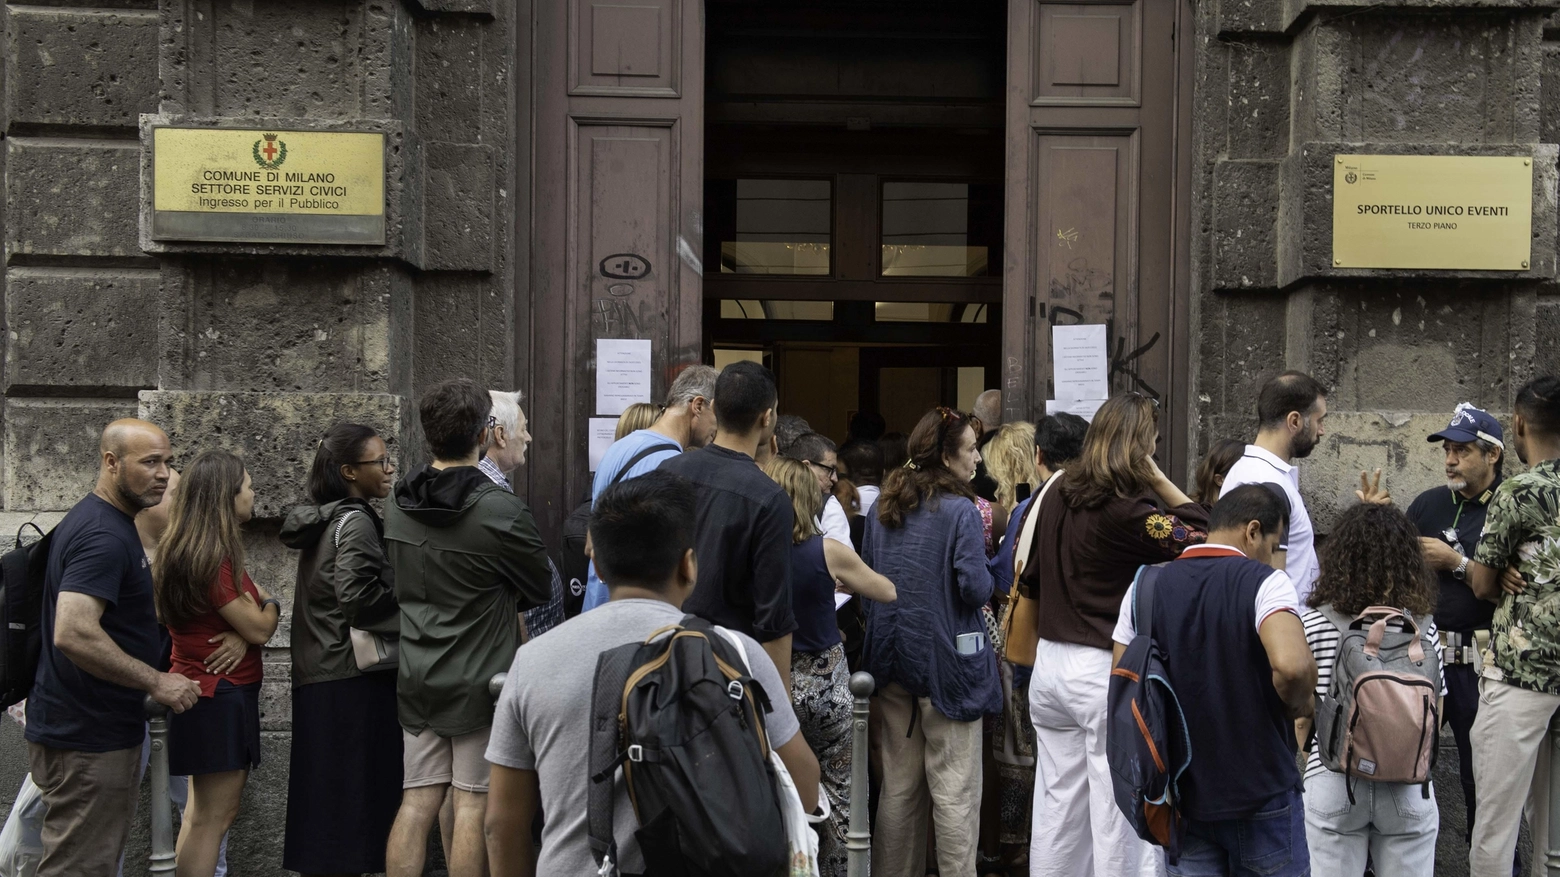 

Servizi comunali a Milano, i disservizi continuano: nota del Comune